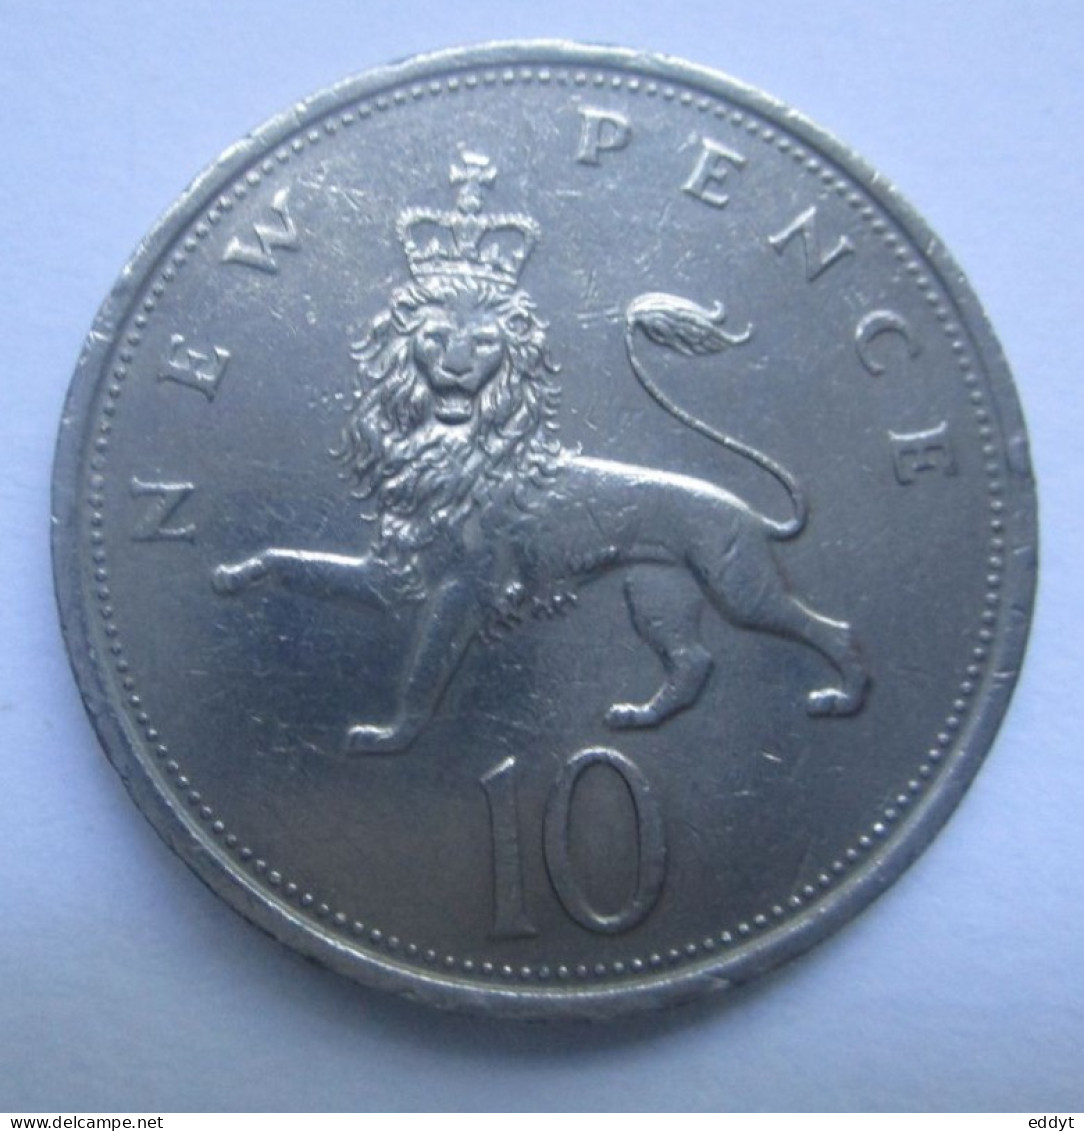 Monnaie Pièce Anglaise - 1975 -  10 New Pence -  ELYZABETH  II -  TBE - 10 Pence & 10 New Pence